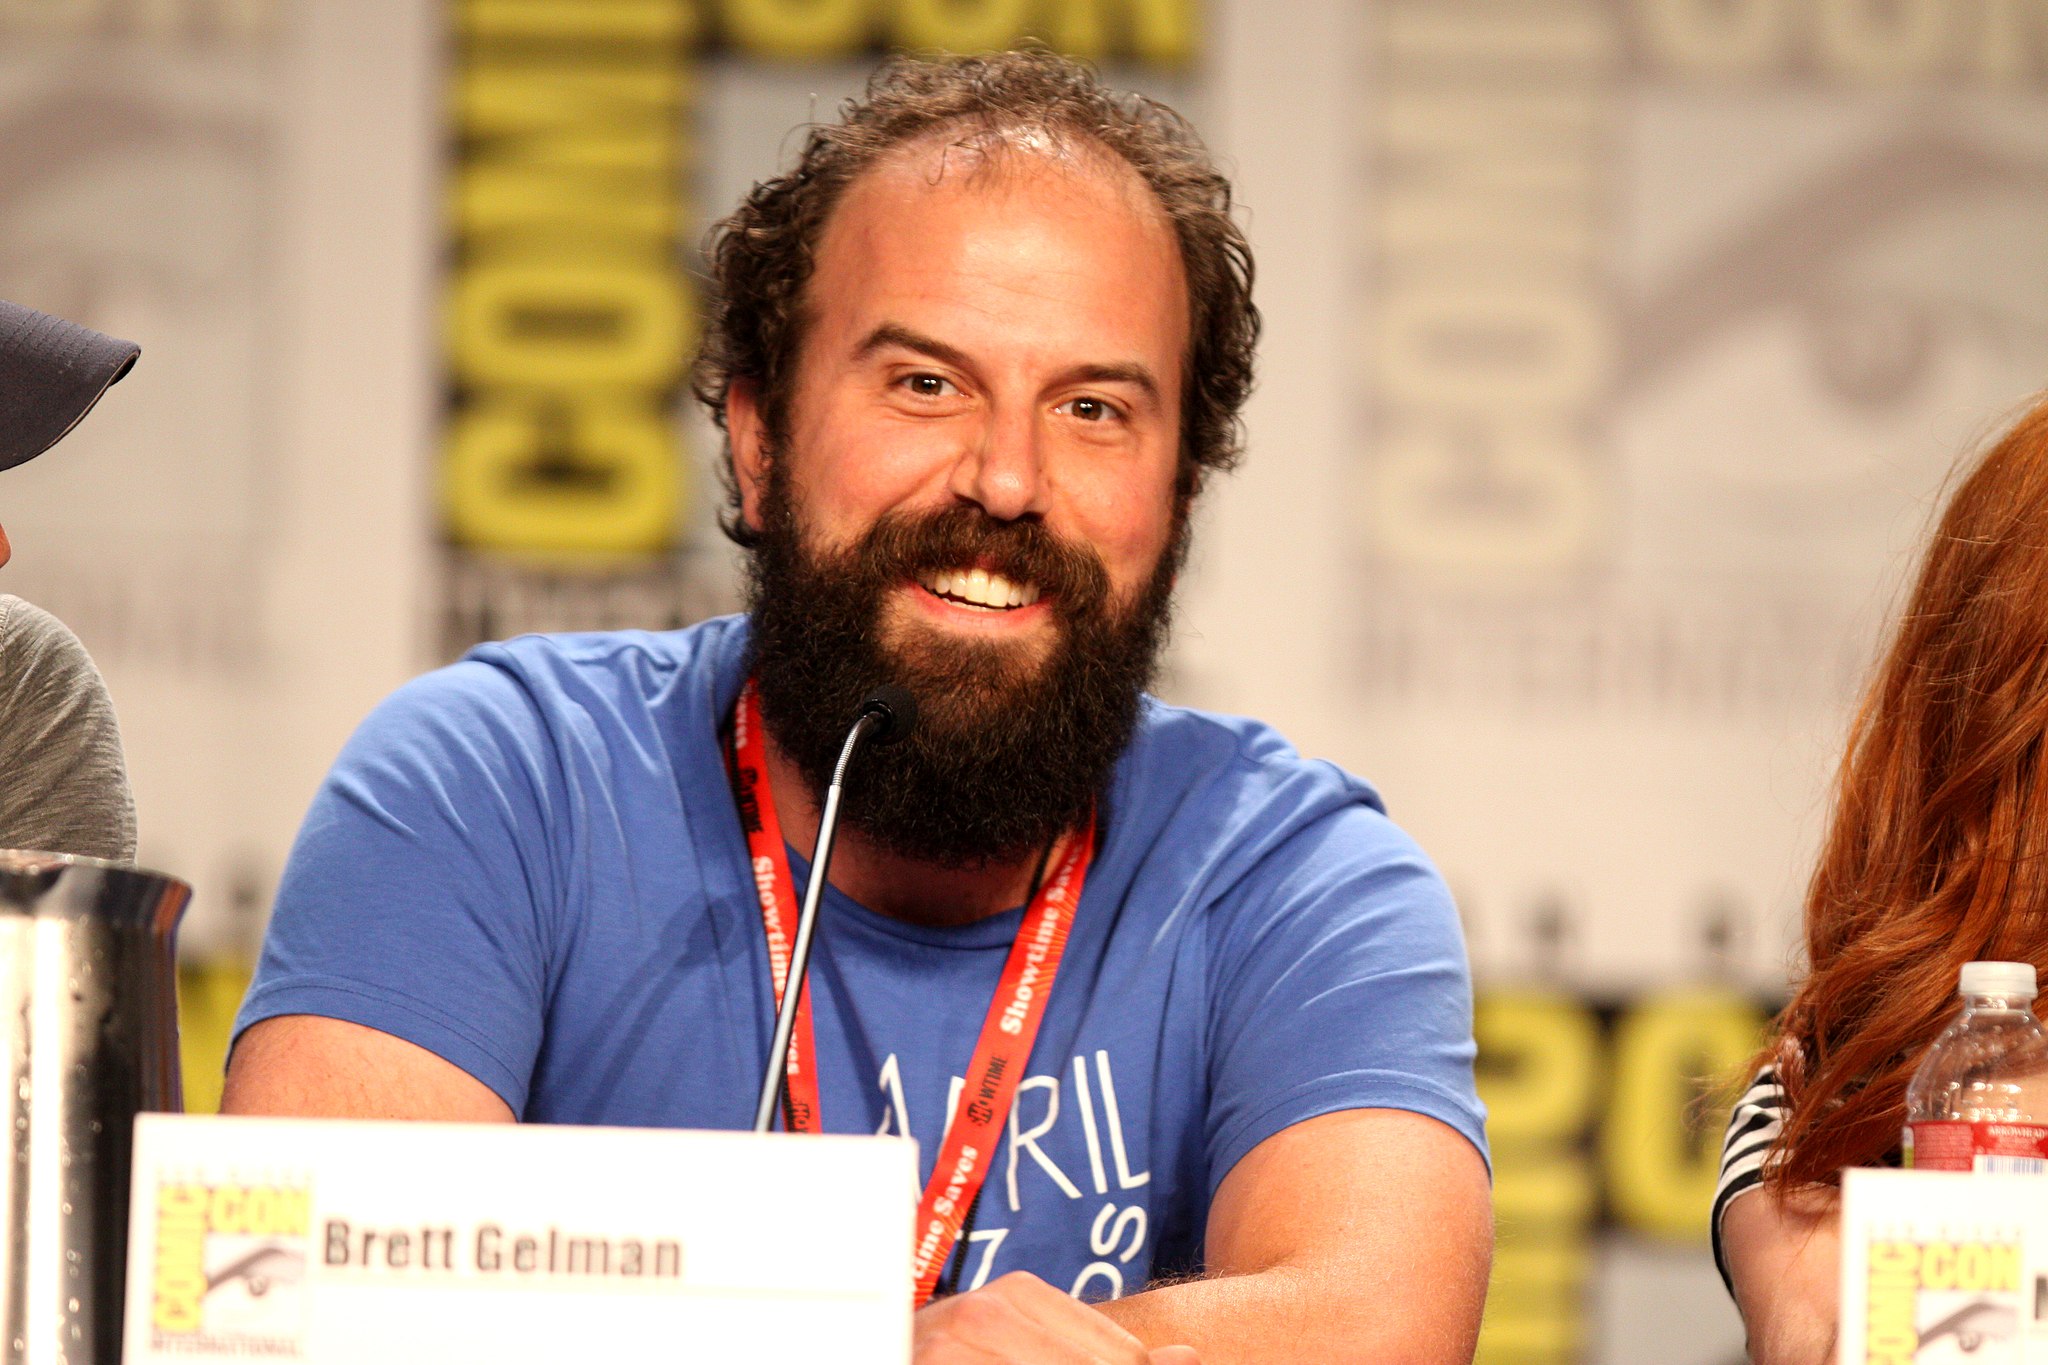 El actor Brett Gelman en la Comic-Con de San Diego en 2011. Foto: Gage Skidmore/Peoria CC BY-SA 2.0.